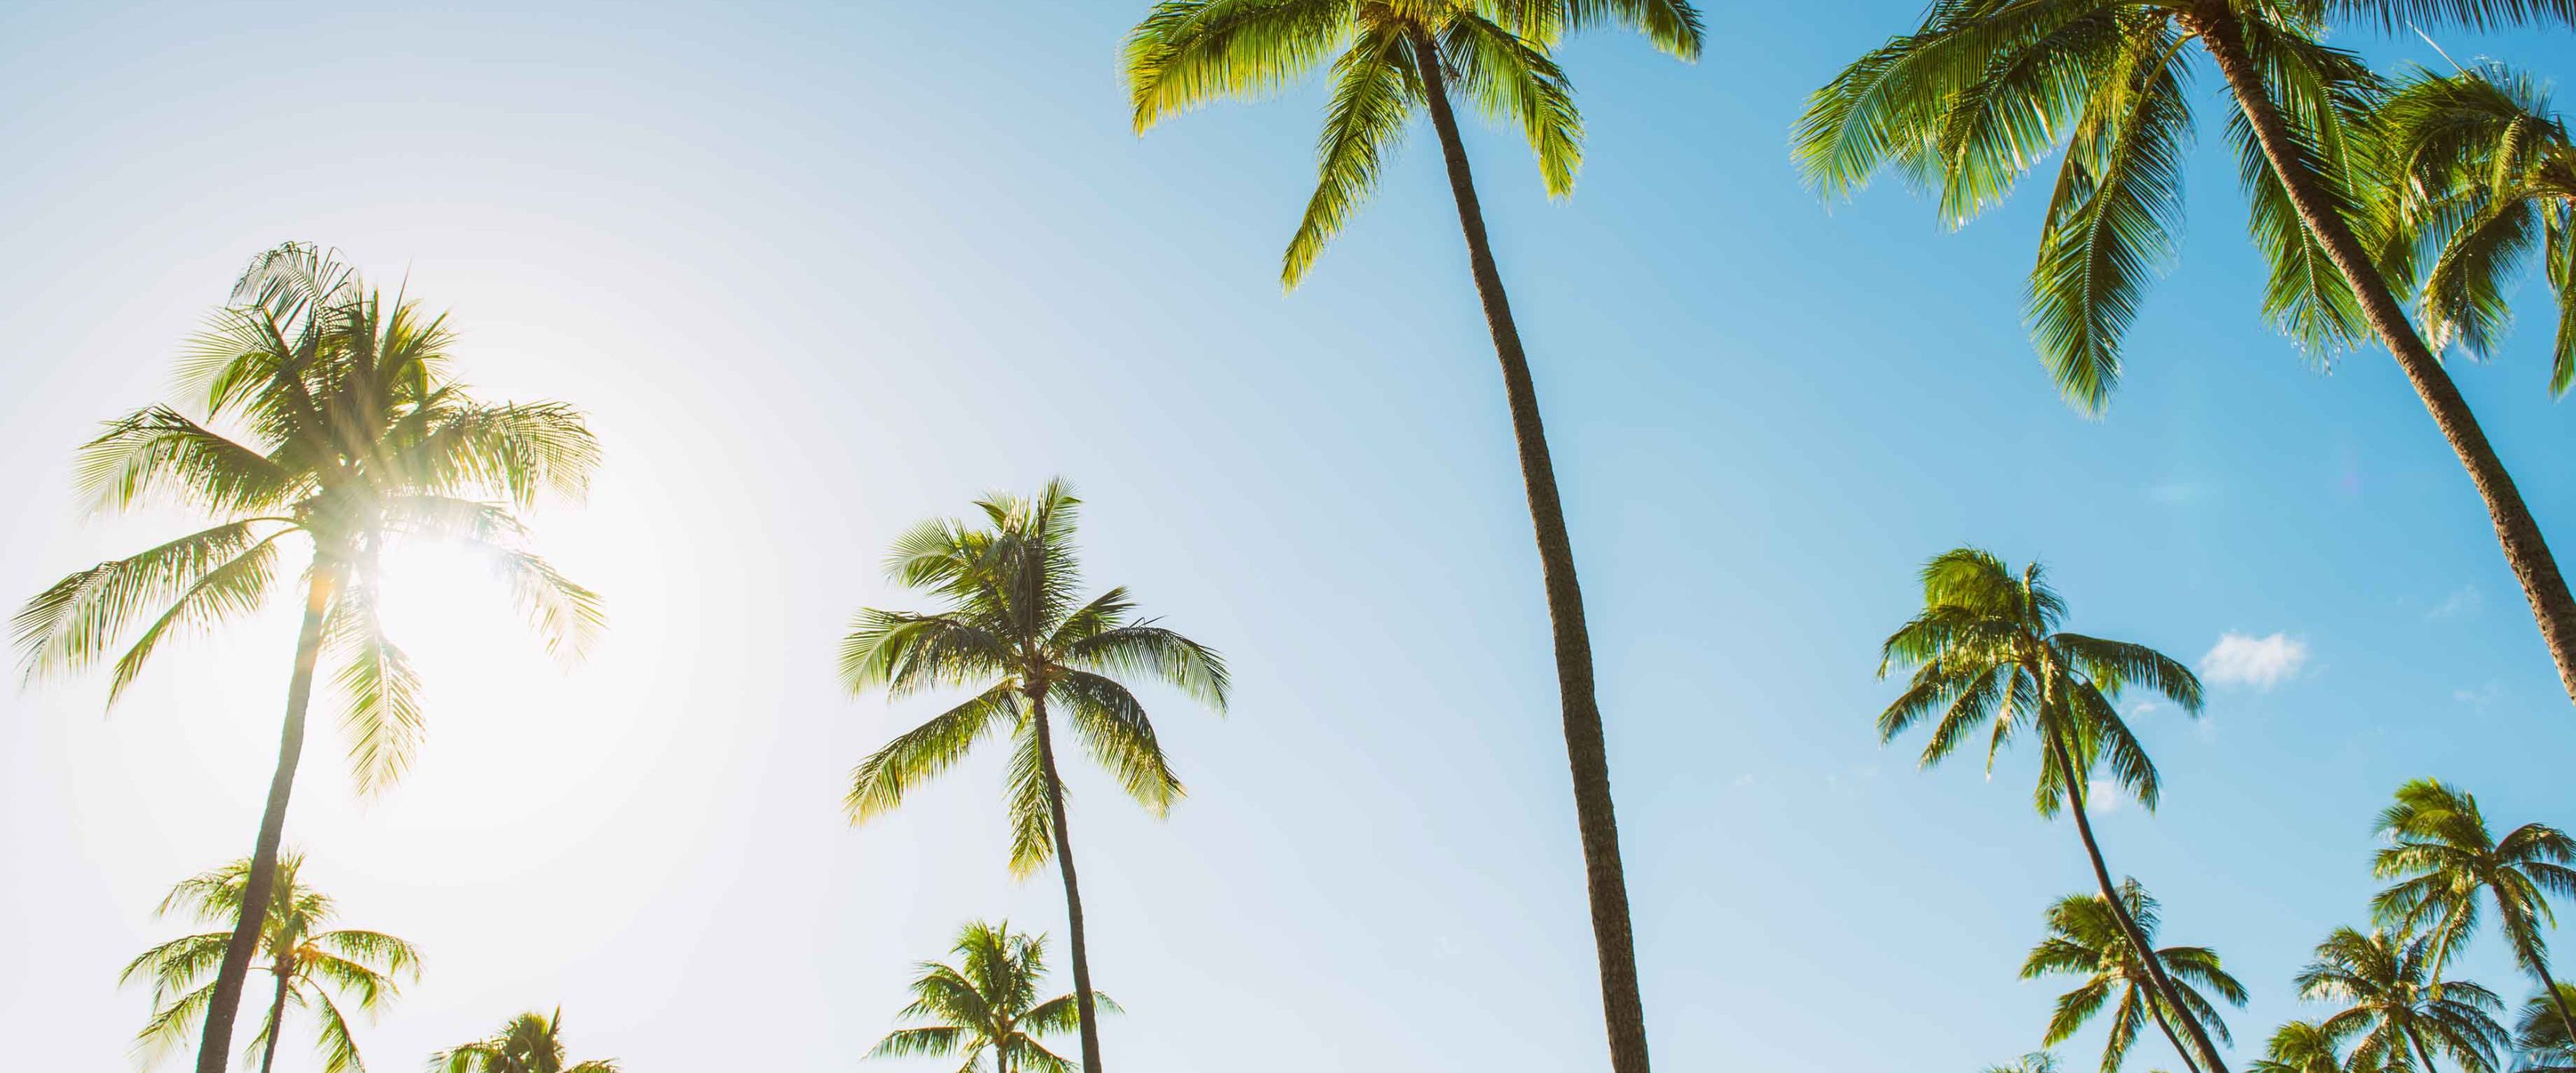 Palm trees and a blue sky